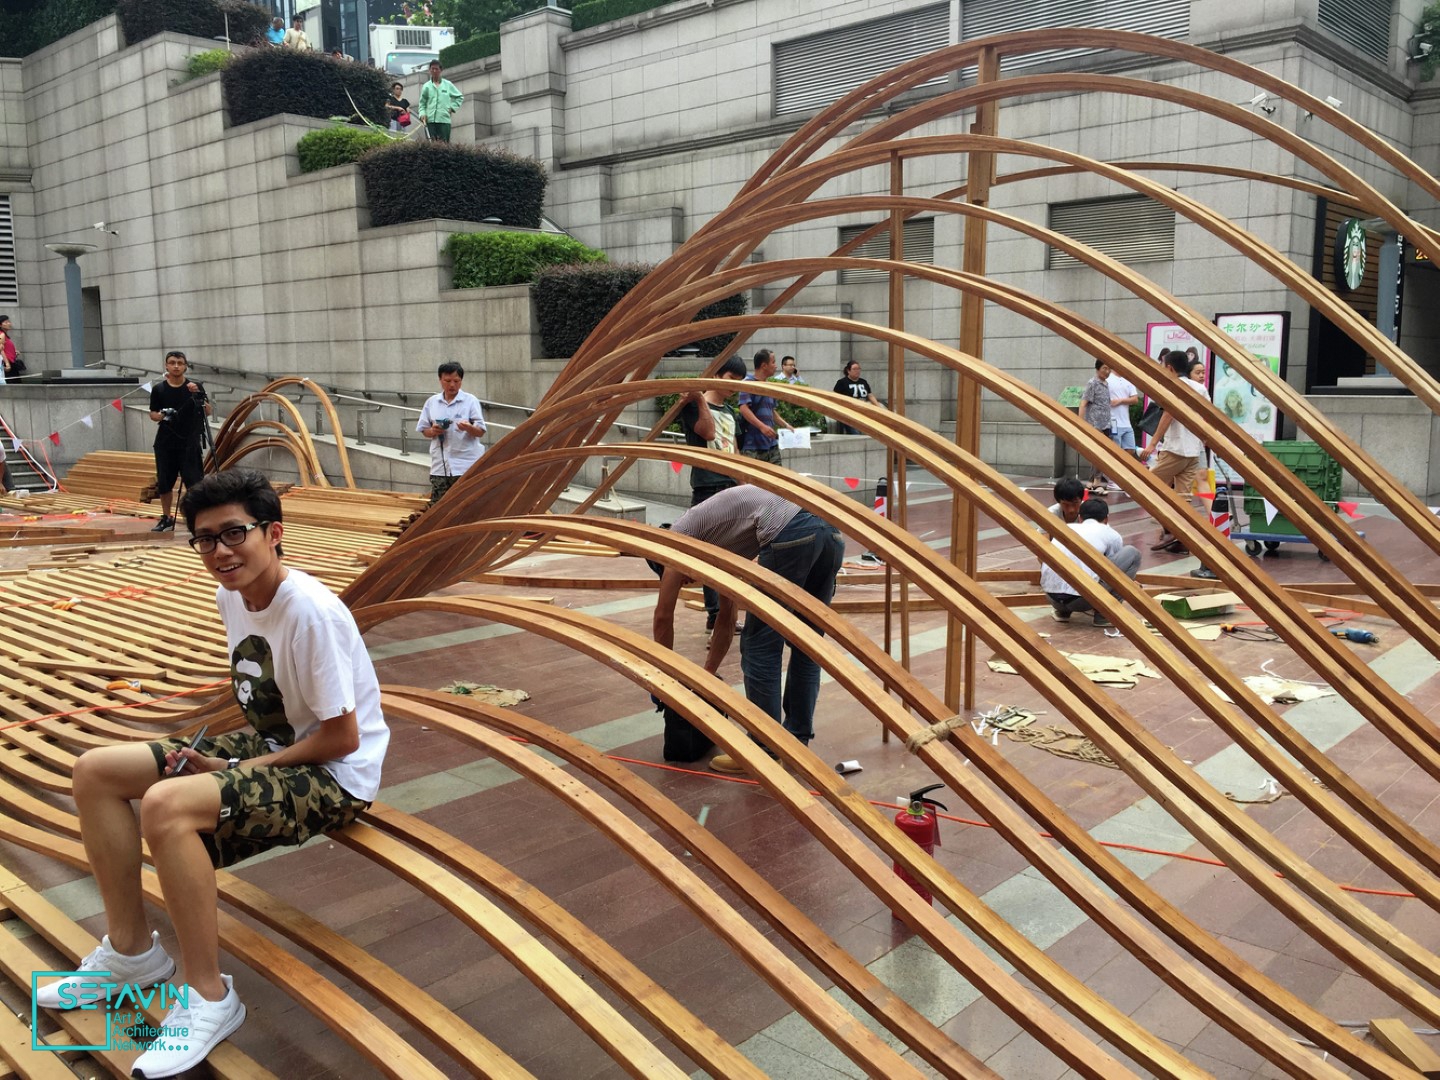 اینستالیشن شهری Flexible Landscape , اثر تیم طراحی GOA Architects , چین 